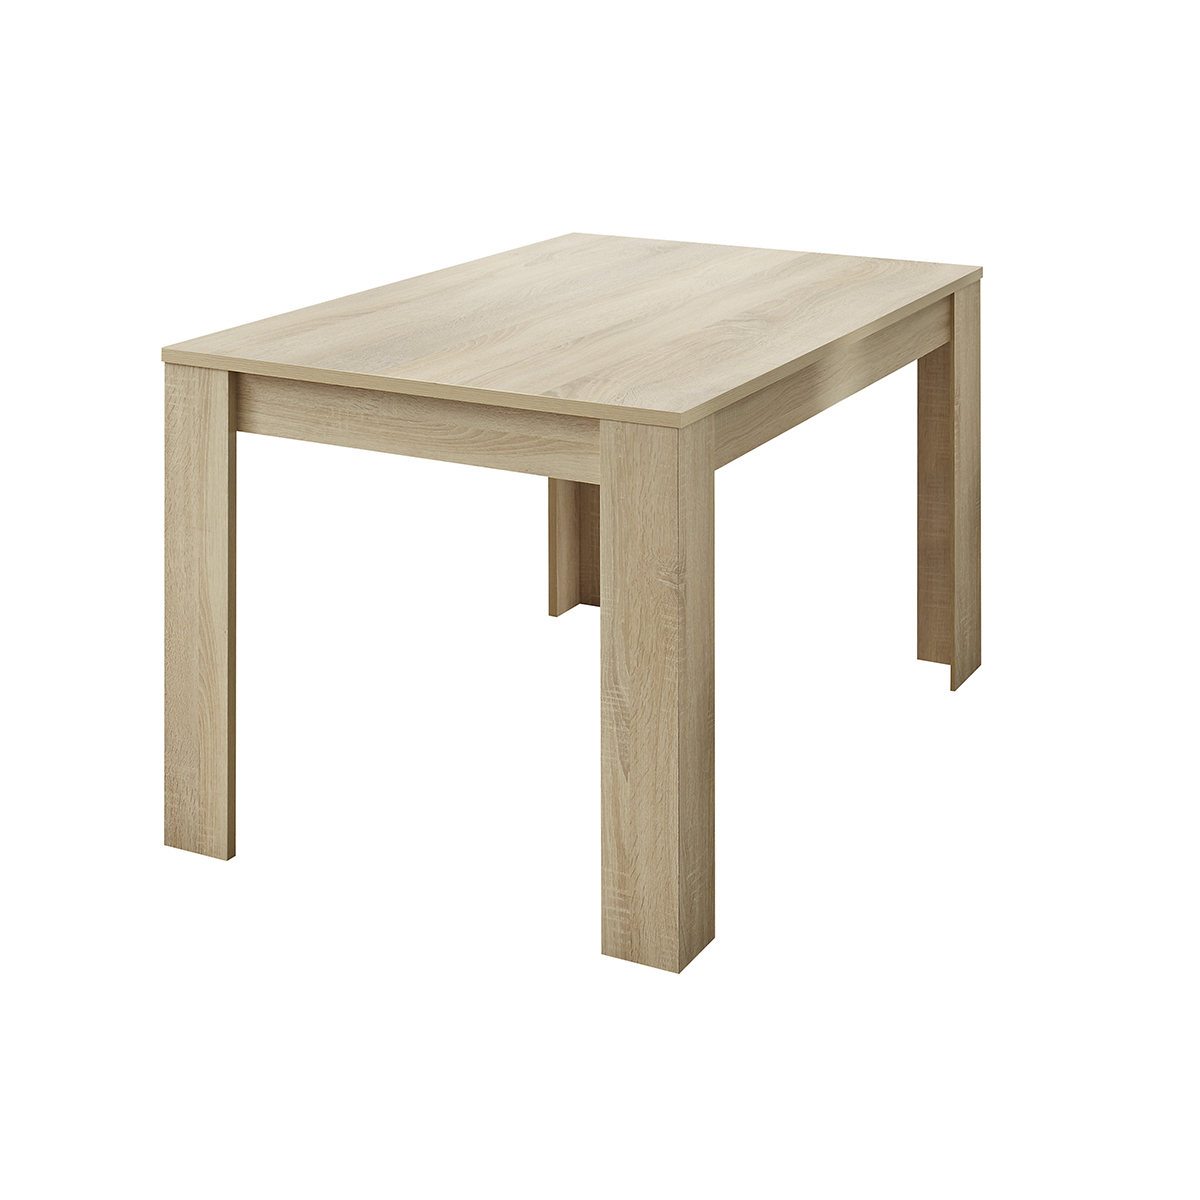 Table à manger extensible plaquée chêne clair rectangulaire L137-185 cm KOFI vue1